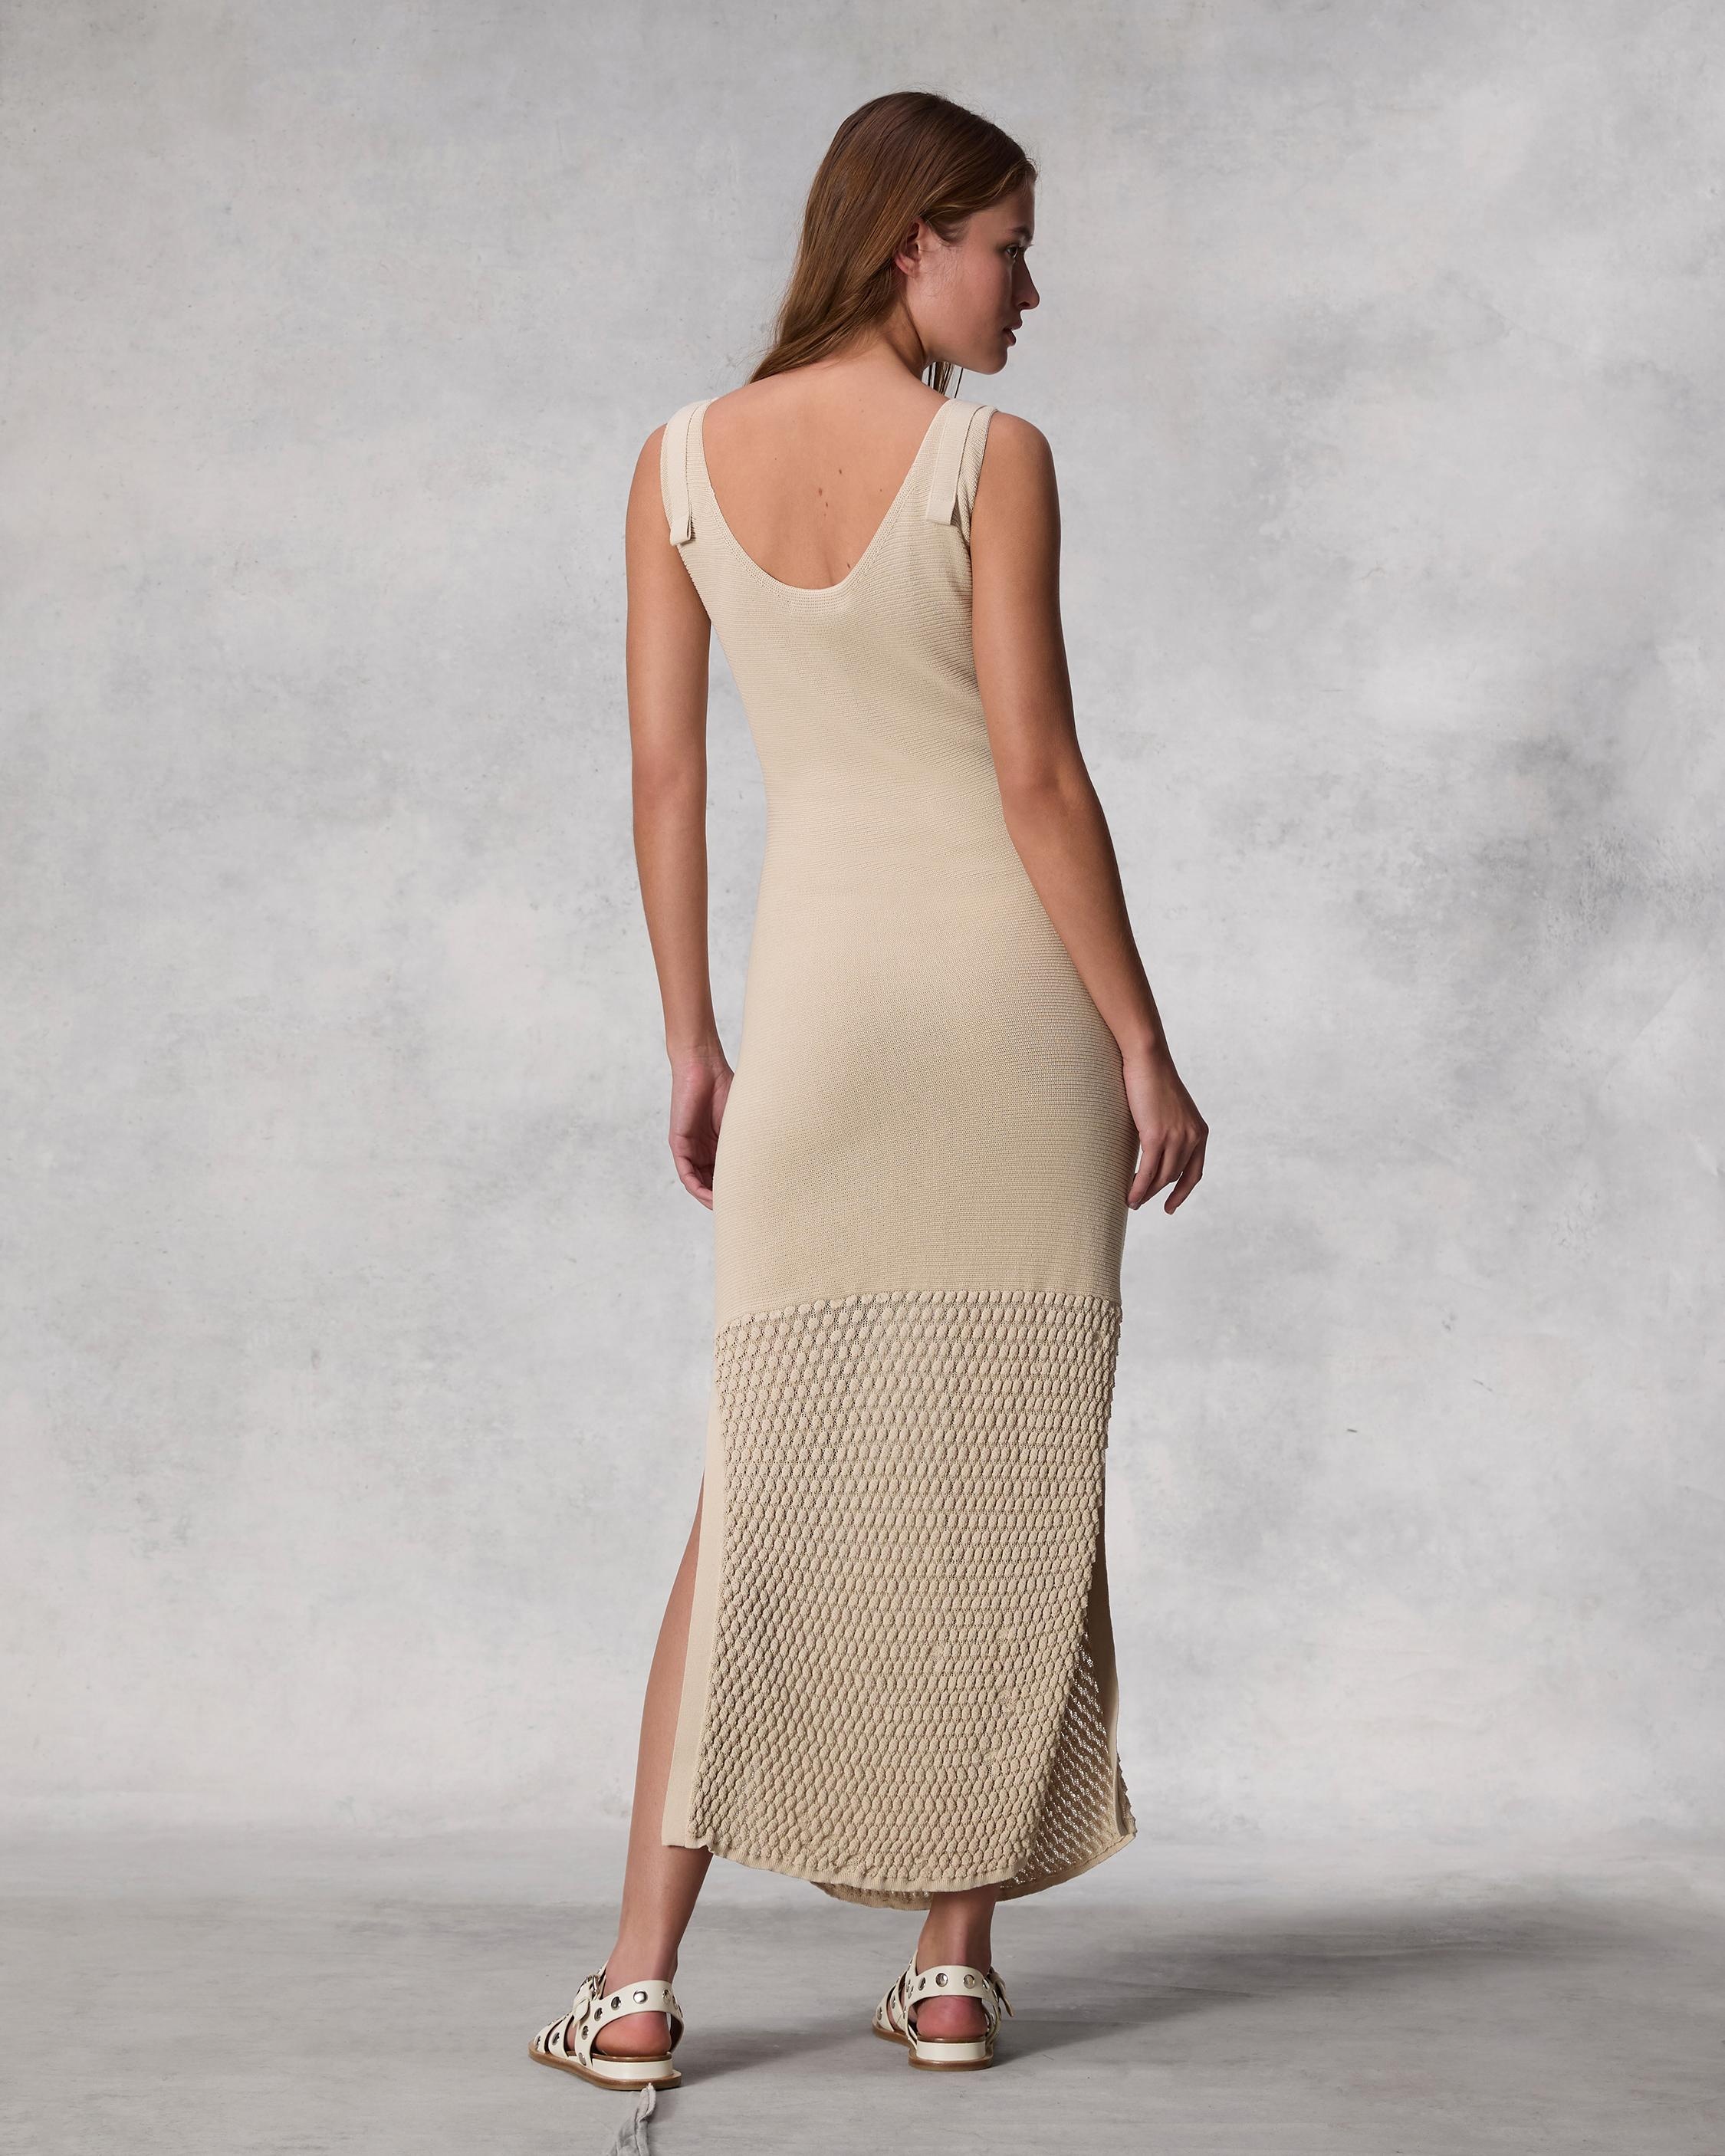 Georgia Cotton Nylon Dress
Midi - 4